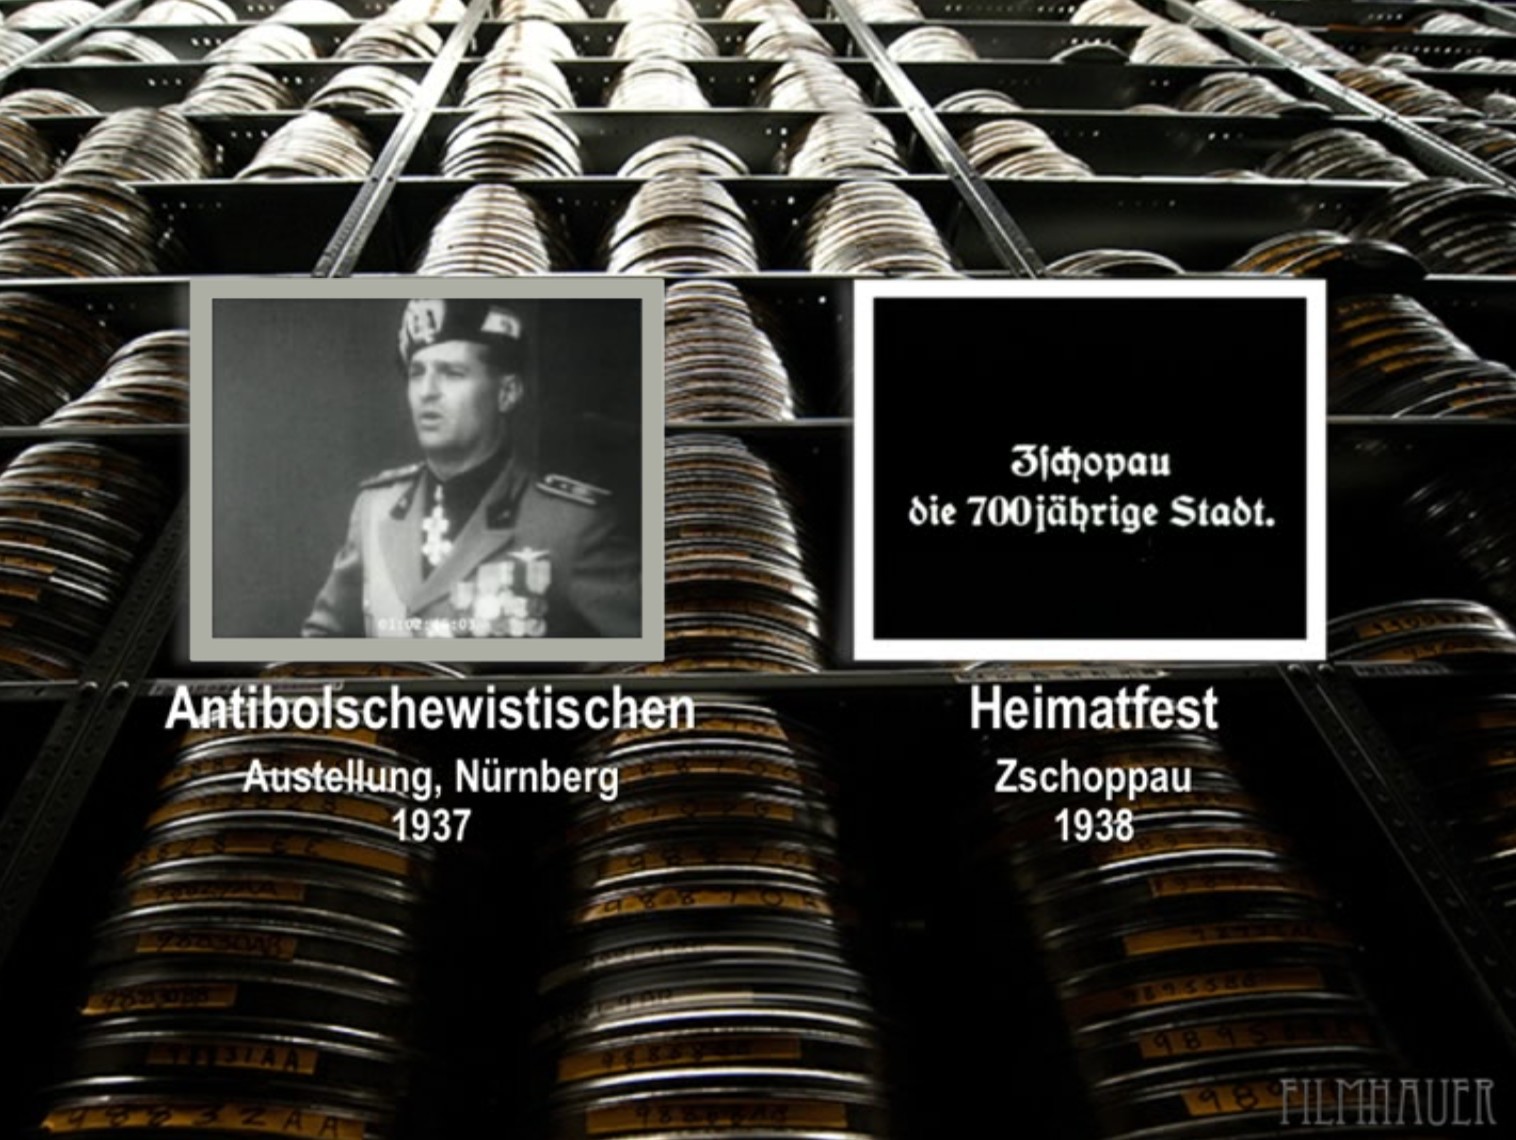 ANTIBOLSCHEWISCHTISCHEN AUSTELLUNG 1937 - HEIMATFEST ZSCHOPPAU 1938